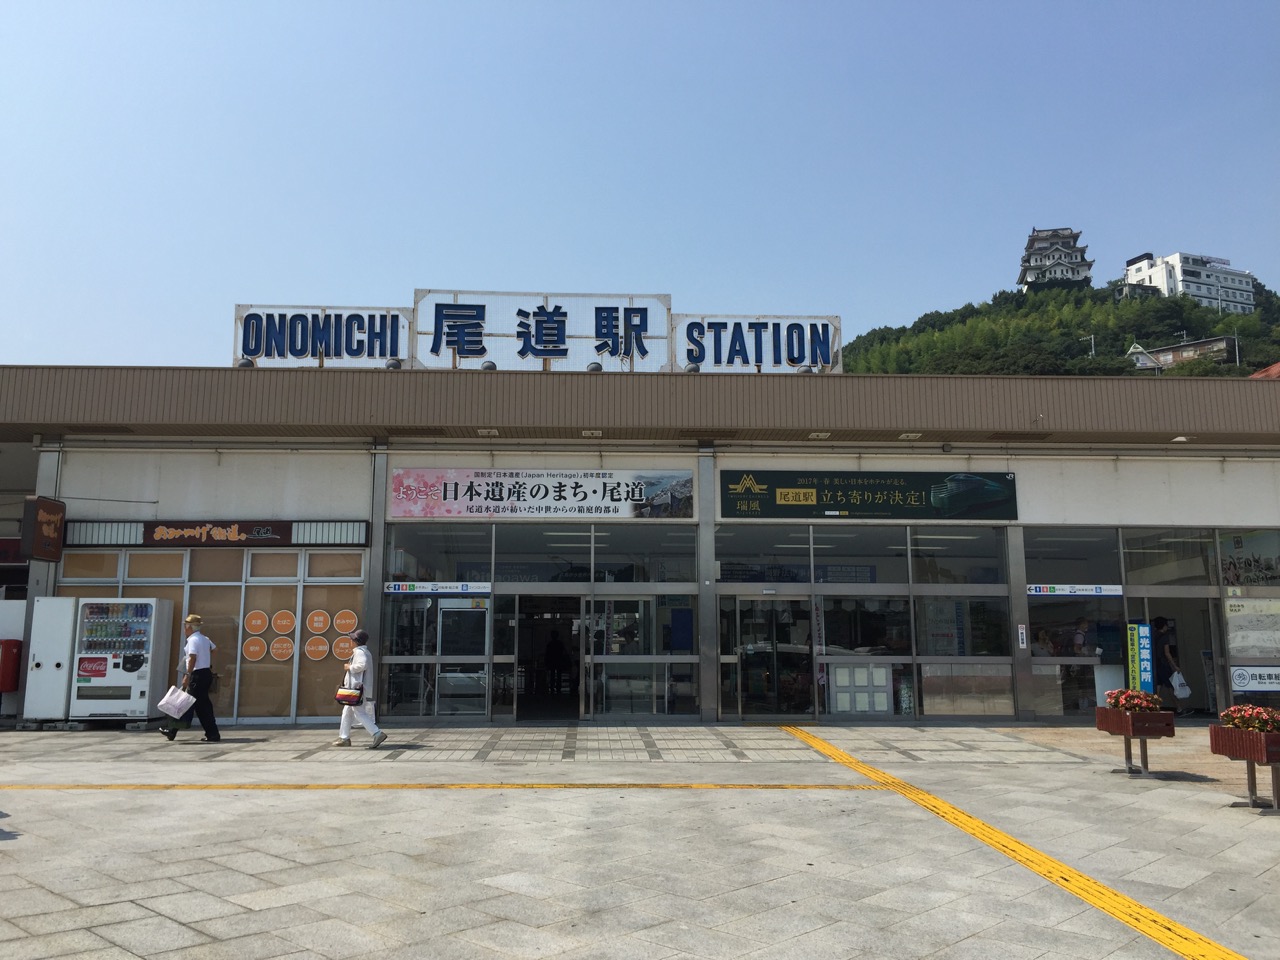 Onomichi